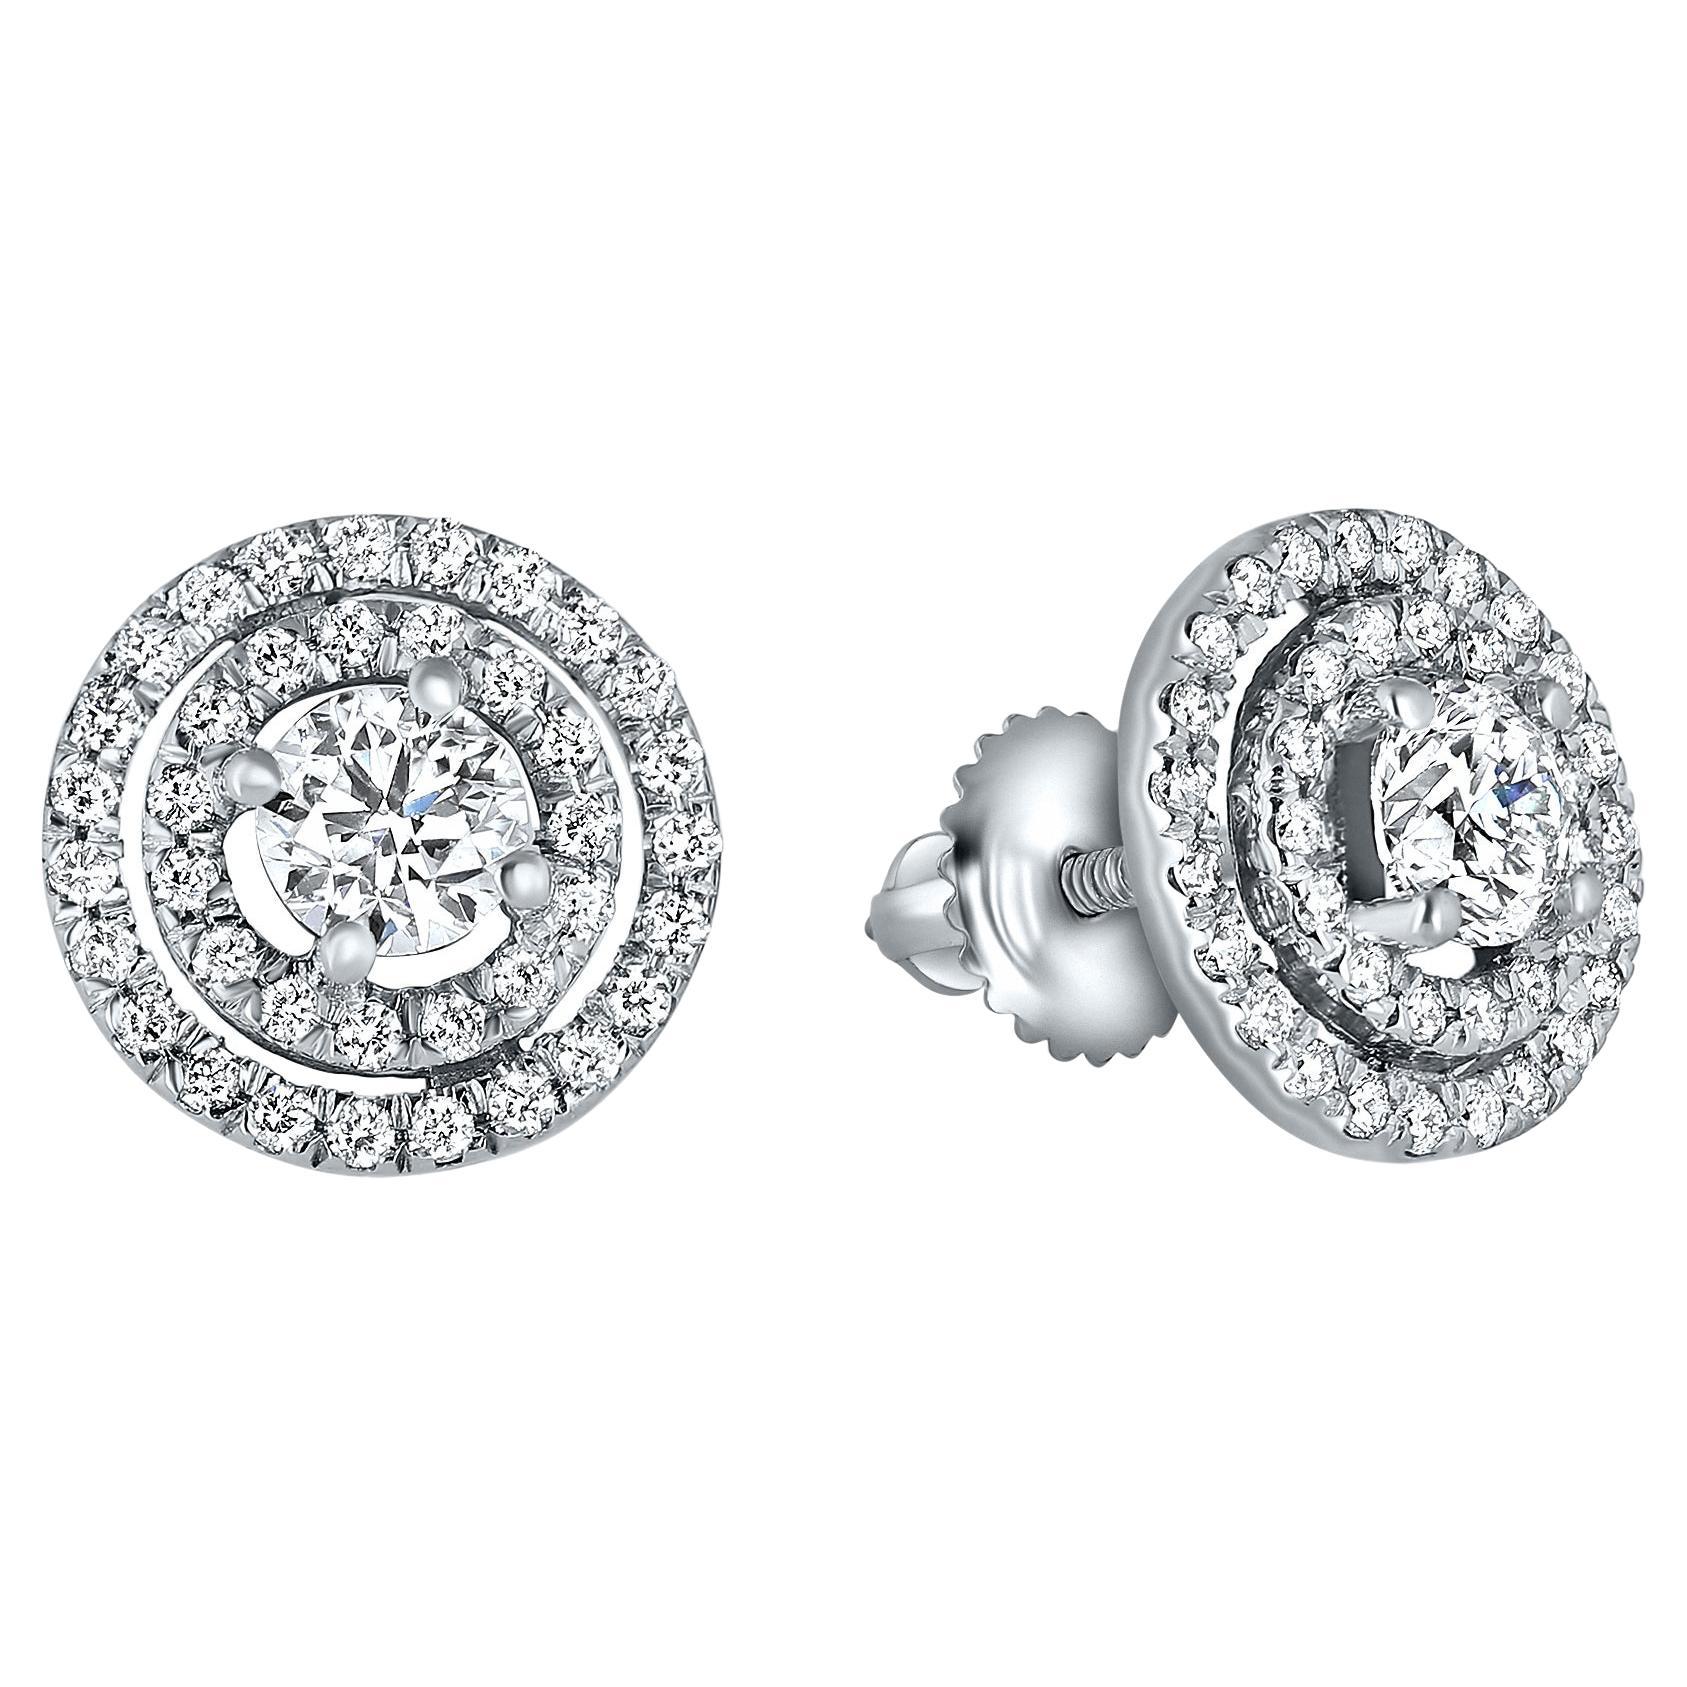 1.15 Carat Diamond Halo Earrings in 14K White Gold - Shlomit Rogel